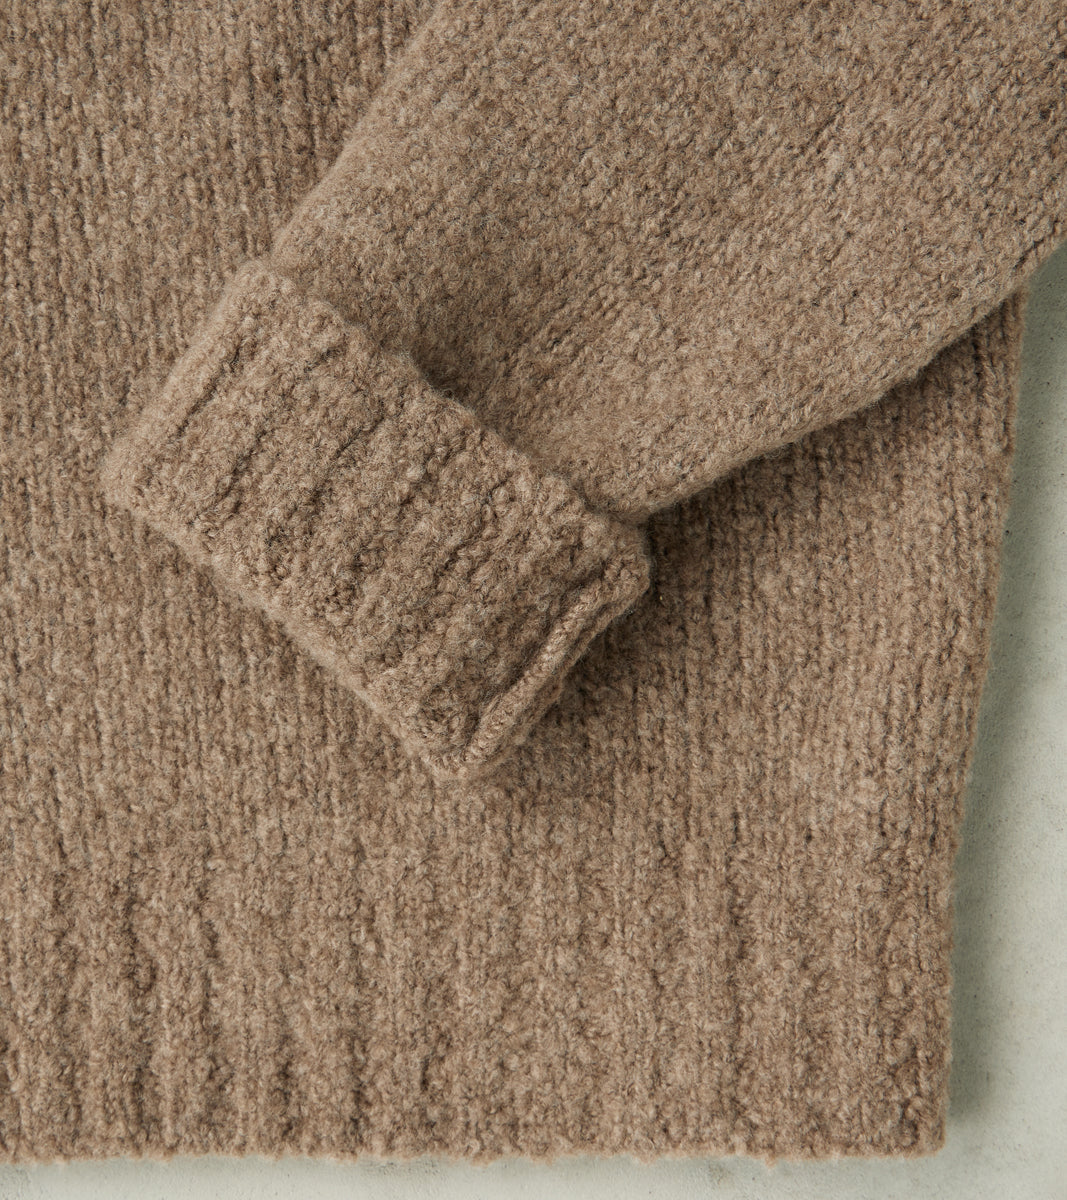 de Bonne Facture Boucle Wool Crewneck Knit Sweater - Undyed Taupe S